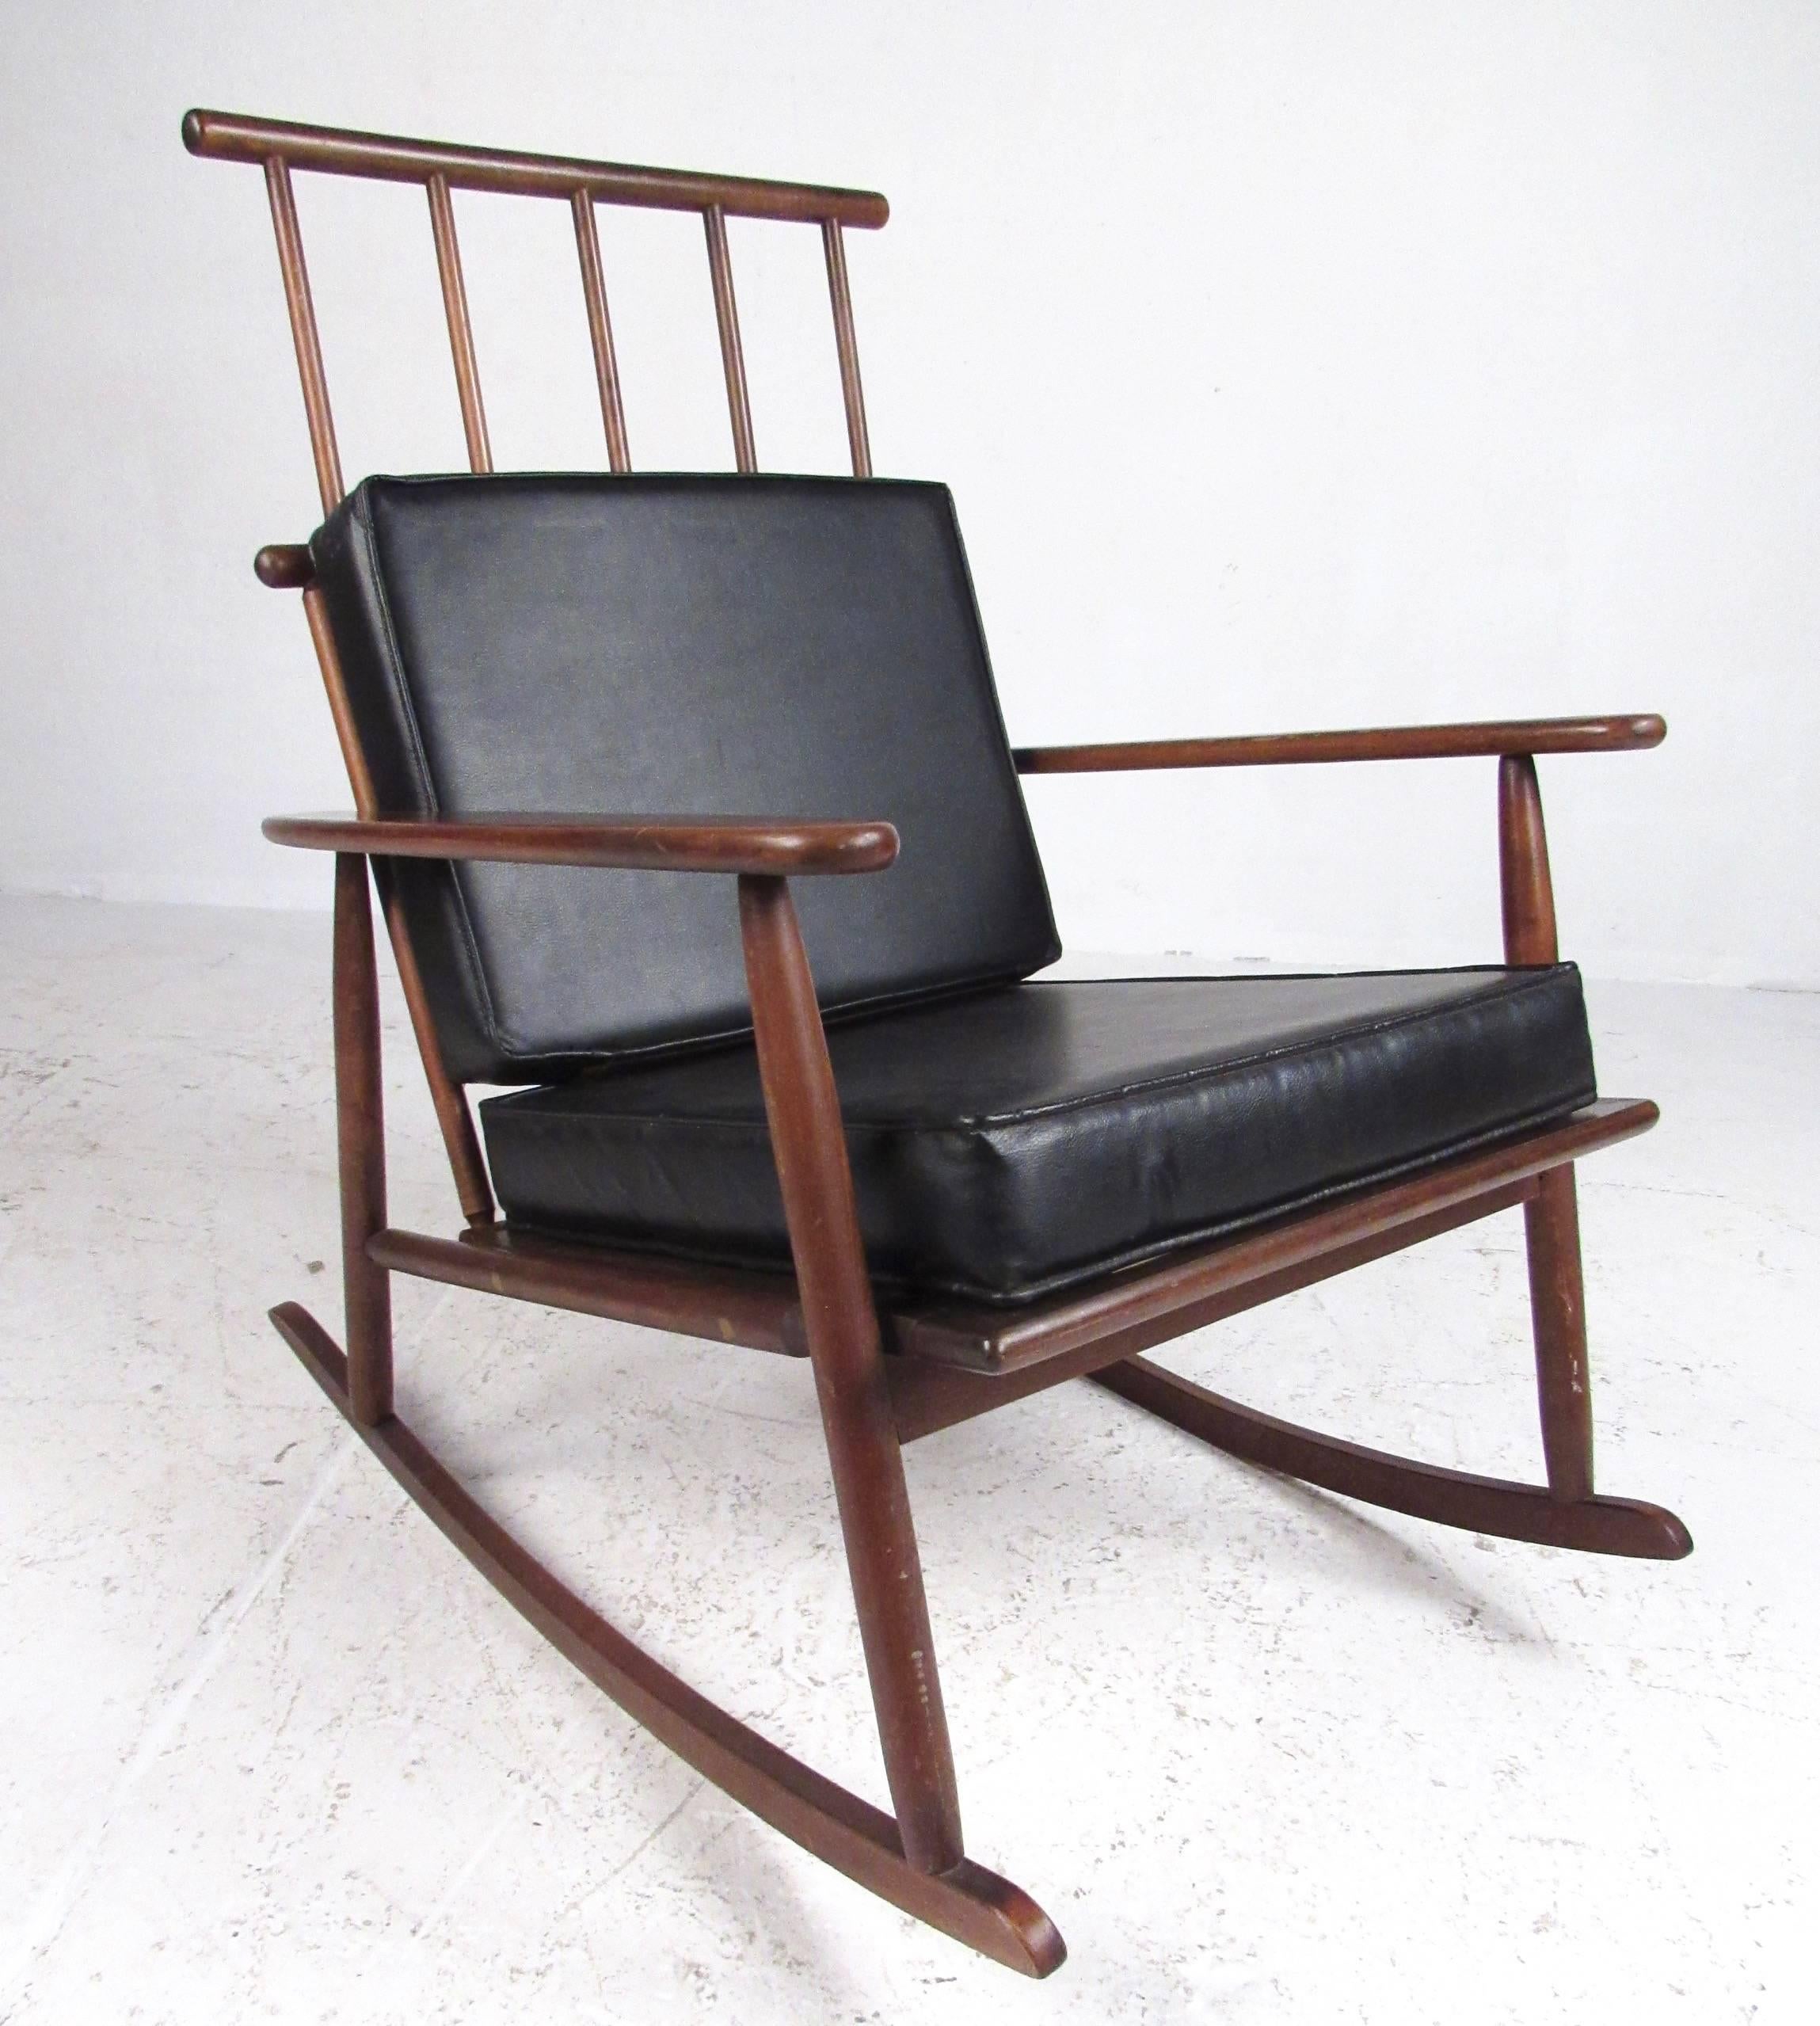 Le design moderne danois unique de ce fauteuil à bascule du milieu du siècle constitue un ajout frappant à la maison ou au bureau. Le dossier sculptural en forme de rayon ajoute à l'attrait scandinave distinctif du fauteuil. Coussins amovibles pour